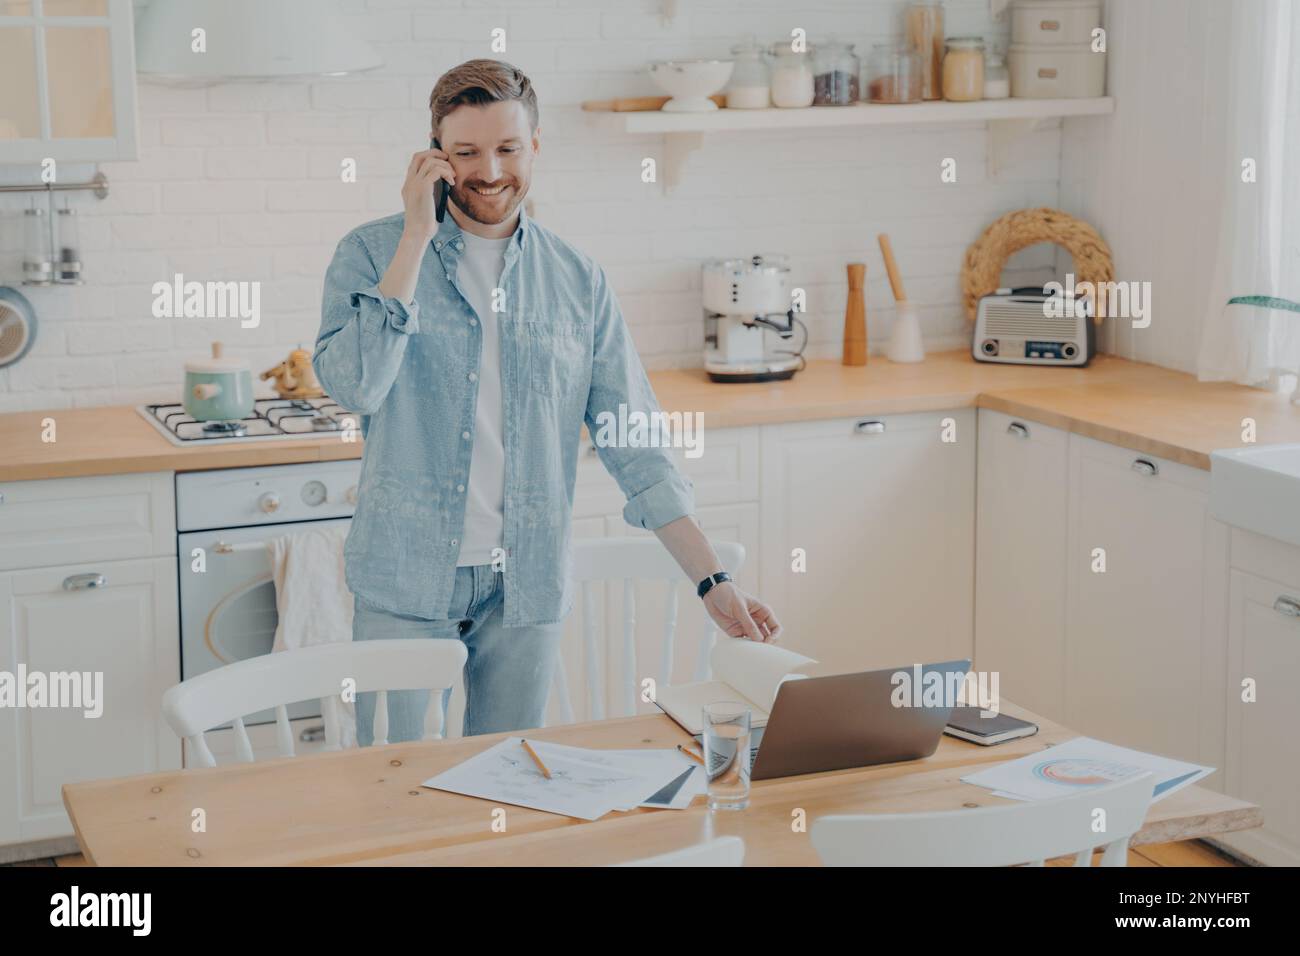 Attraktiver, lächelnder, bärtiger Mann, der lässige Kleidung trägt und an einem Laptop arbeitet, während er zu Hause am Küchentisch steht und sich mit seinem Handy-Witz unterhält Stockfoto